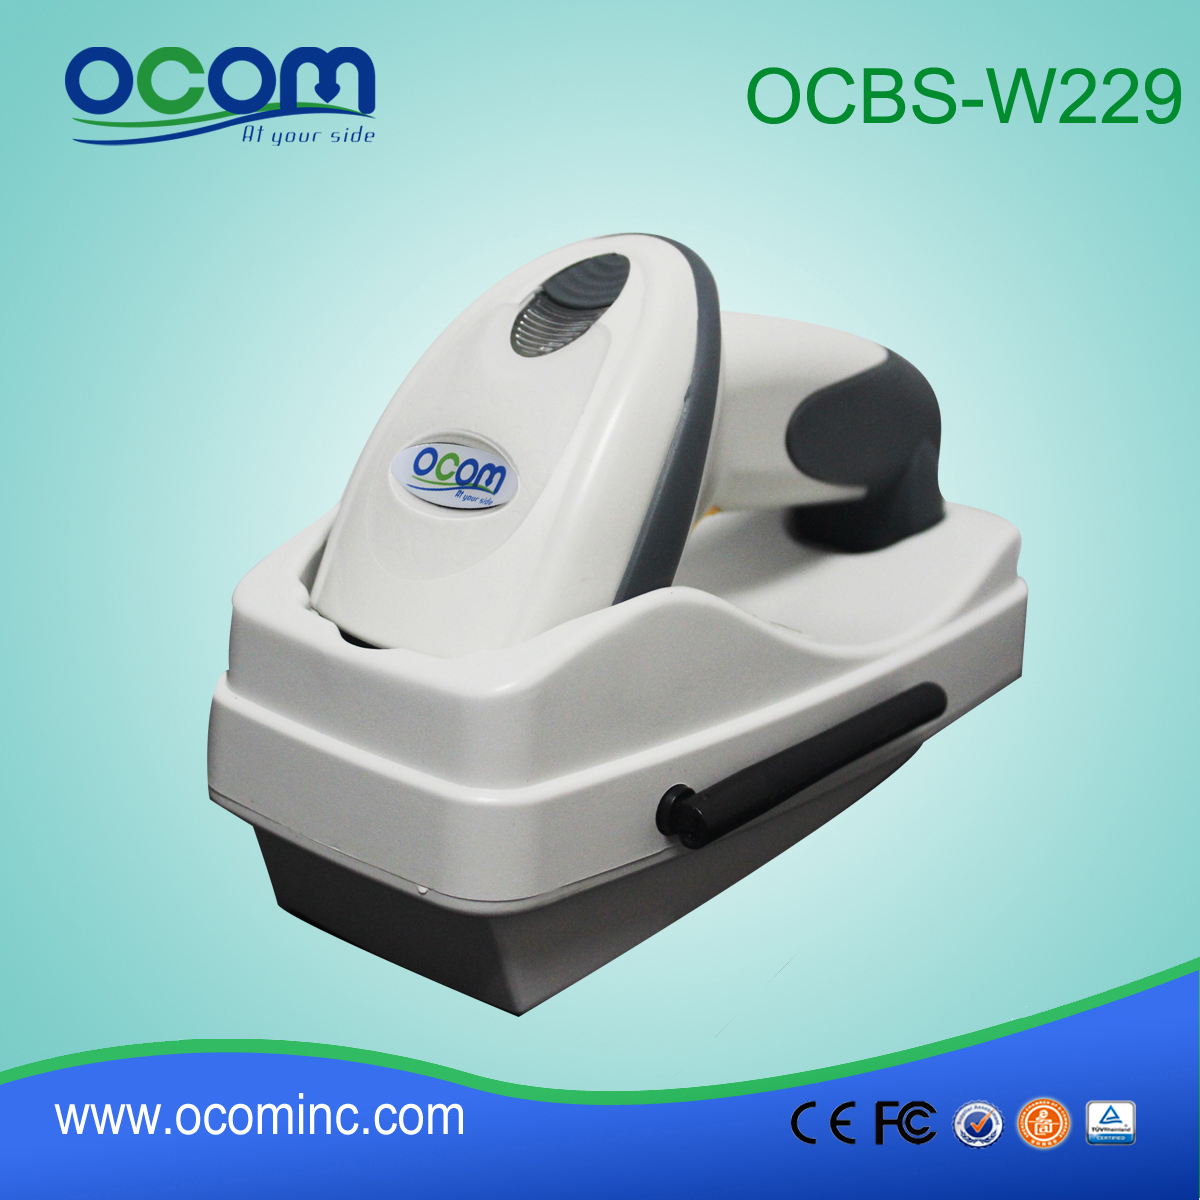 الصين مصنع اللاسلكية 2D الباركود (OCBS-W229)